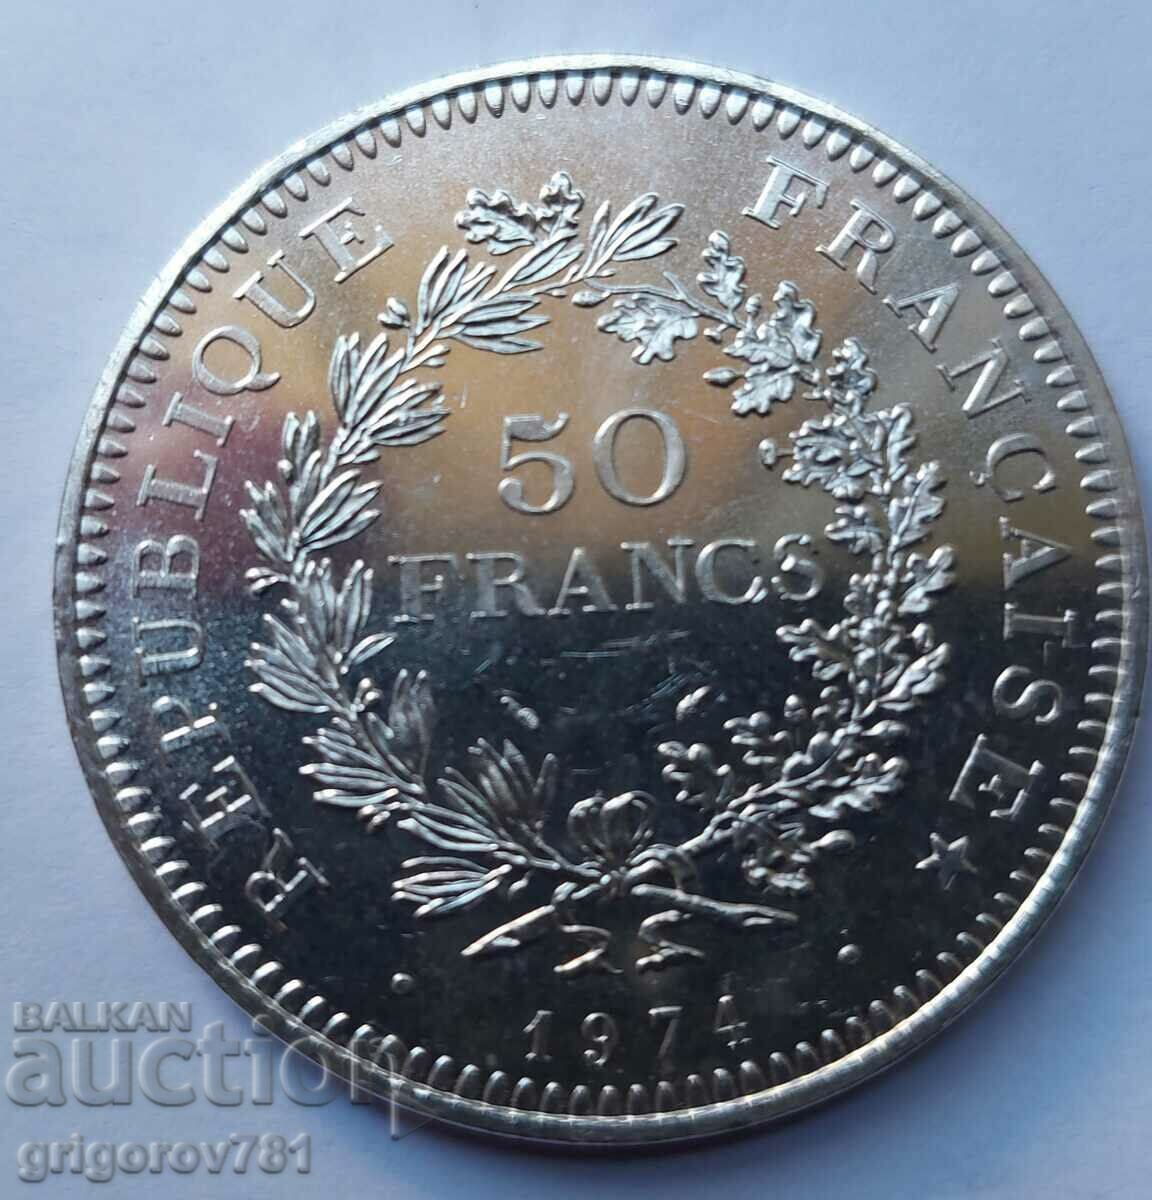 Ασήμι 50 φράγκων Γαλλία 1974 - Ασημένιο νόμισμα #26